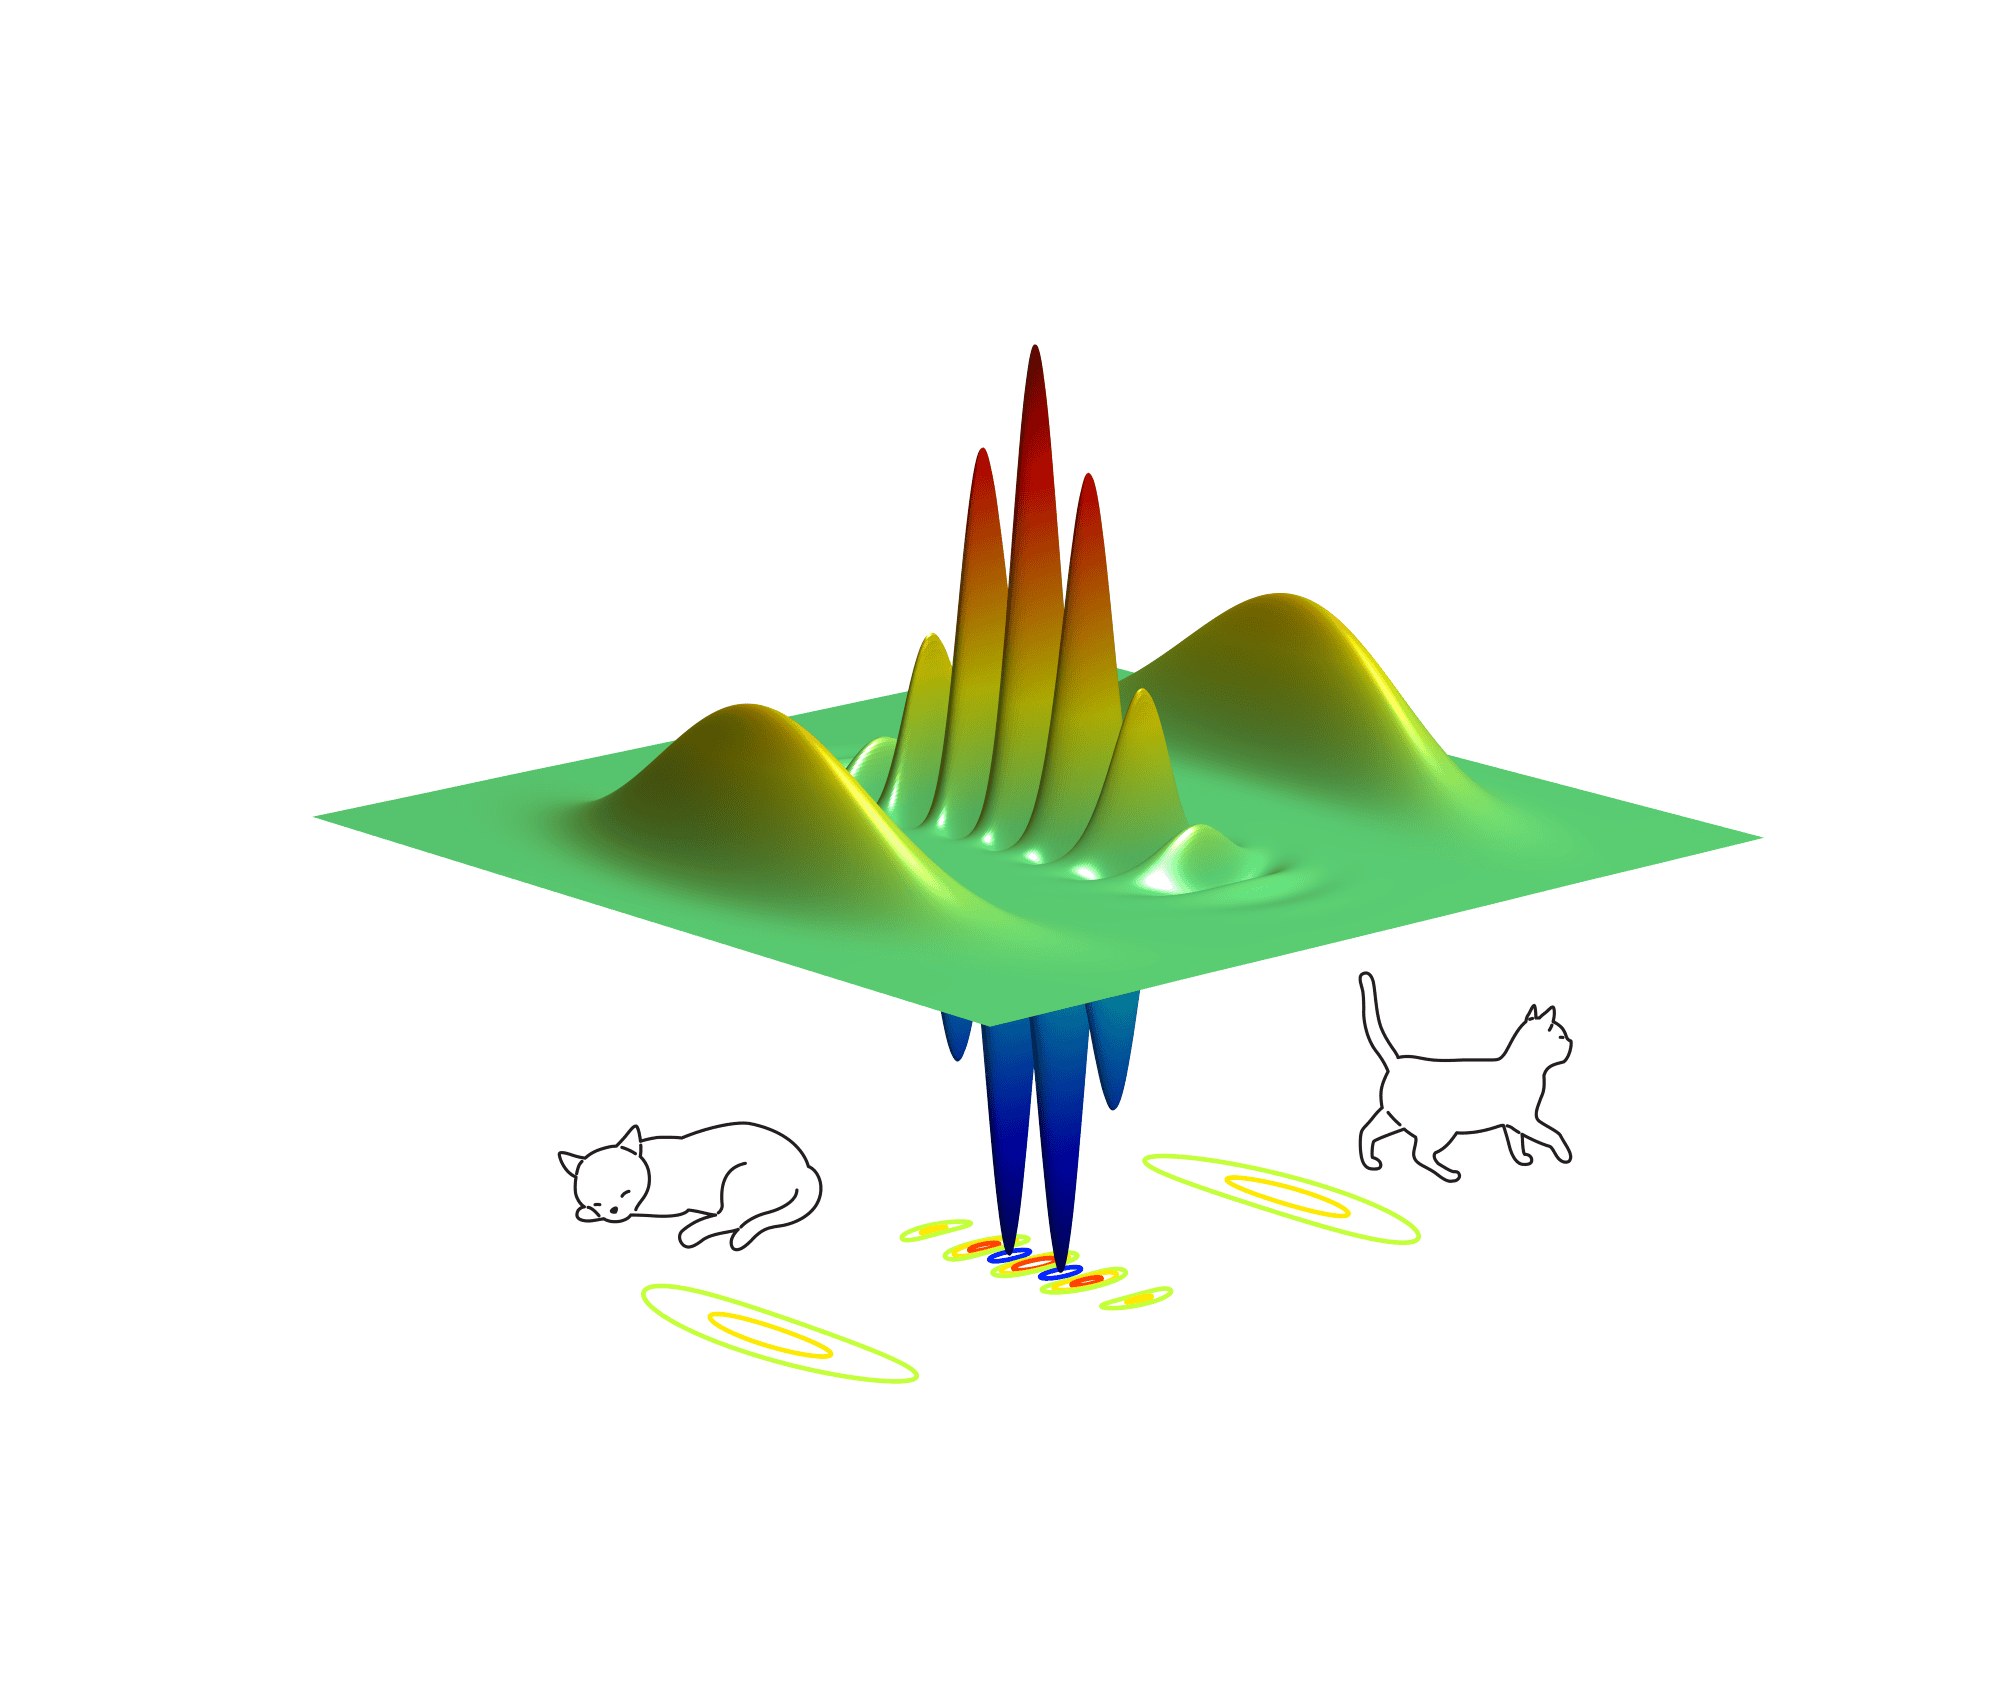 Physics World: Schrödinger’s Cat Outperforms as Qubit in Critical Regime